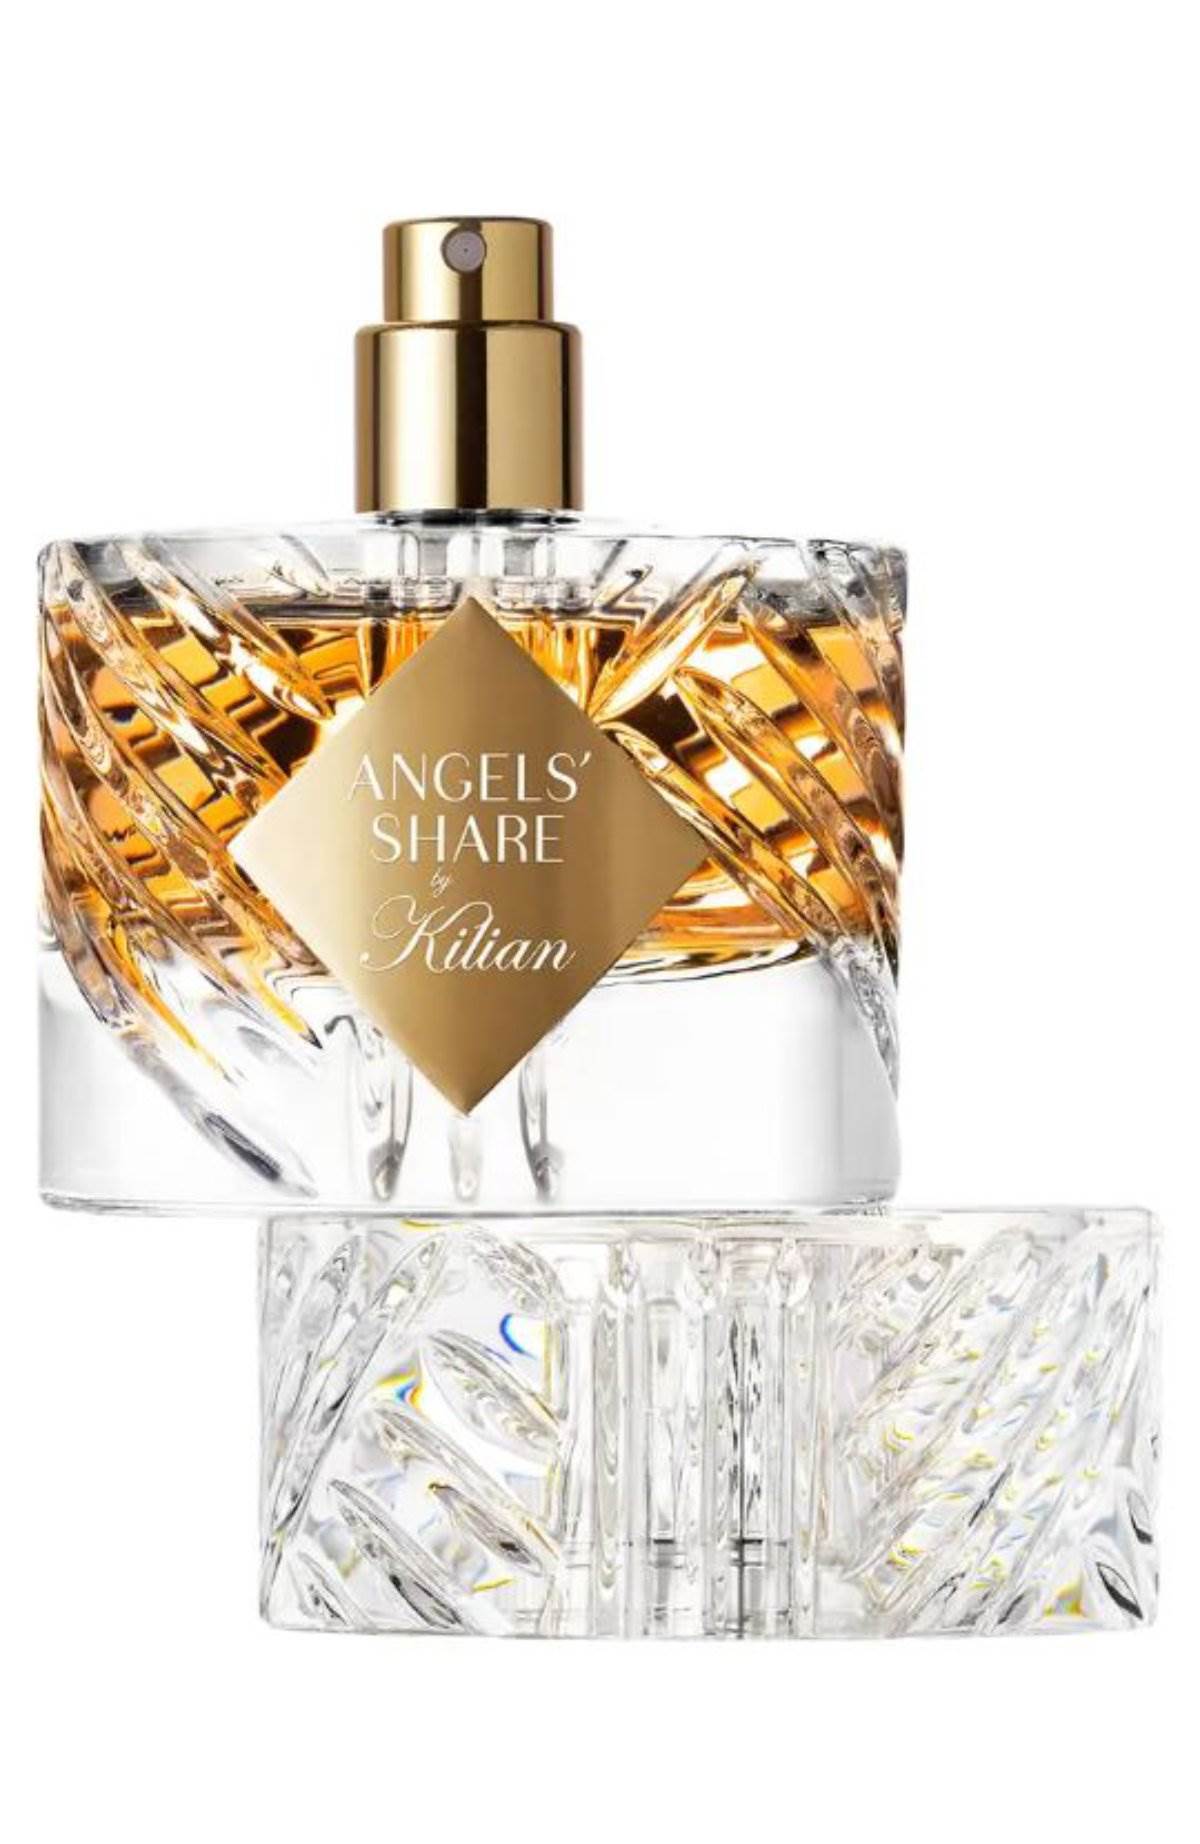  Angels' Share Eau de Parfum, Kilian Paris je moćan zimski parfem. 